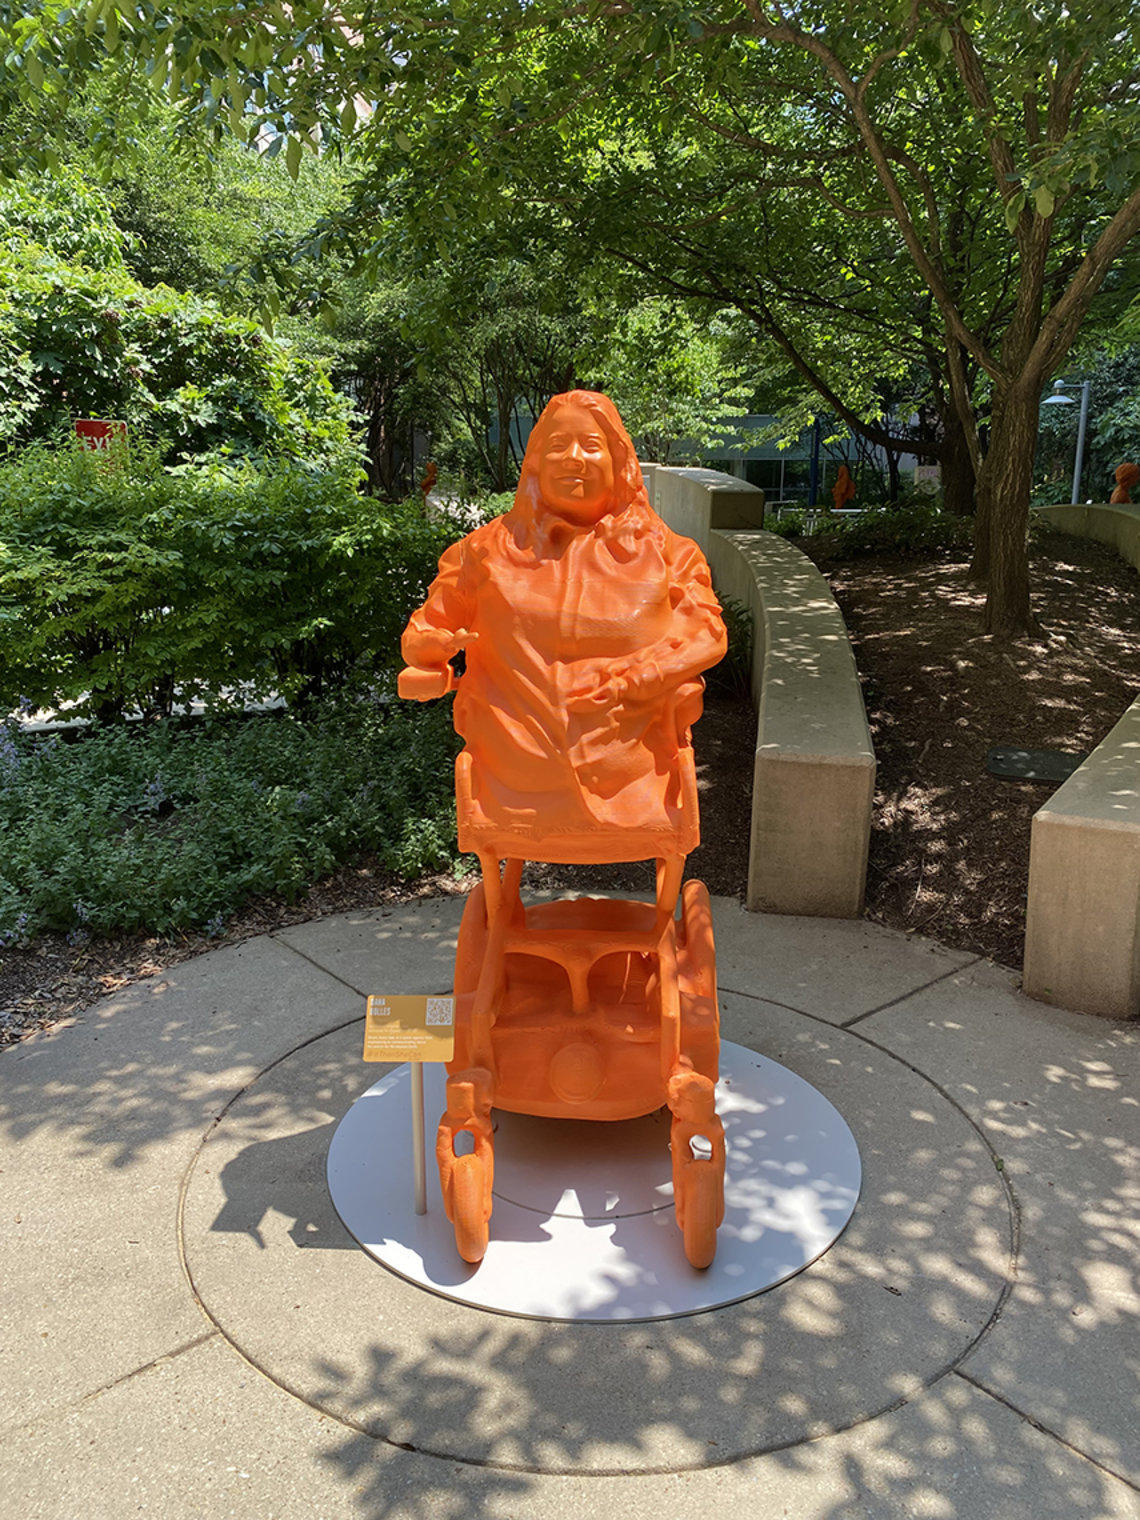 An orange statue